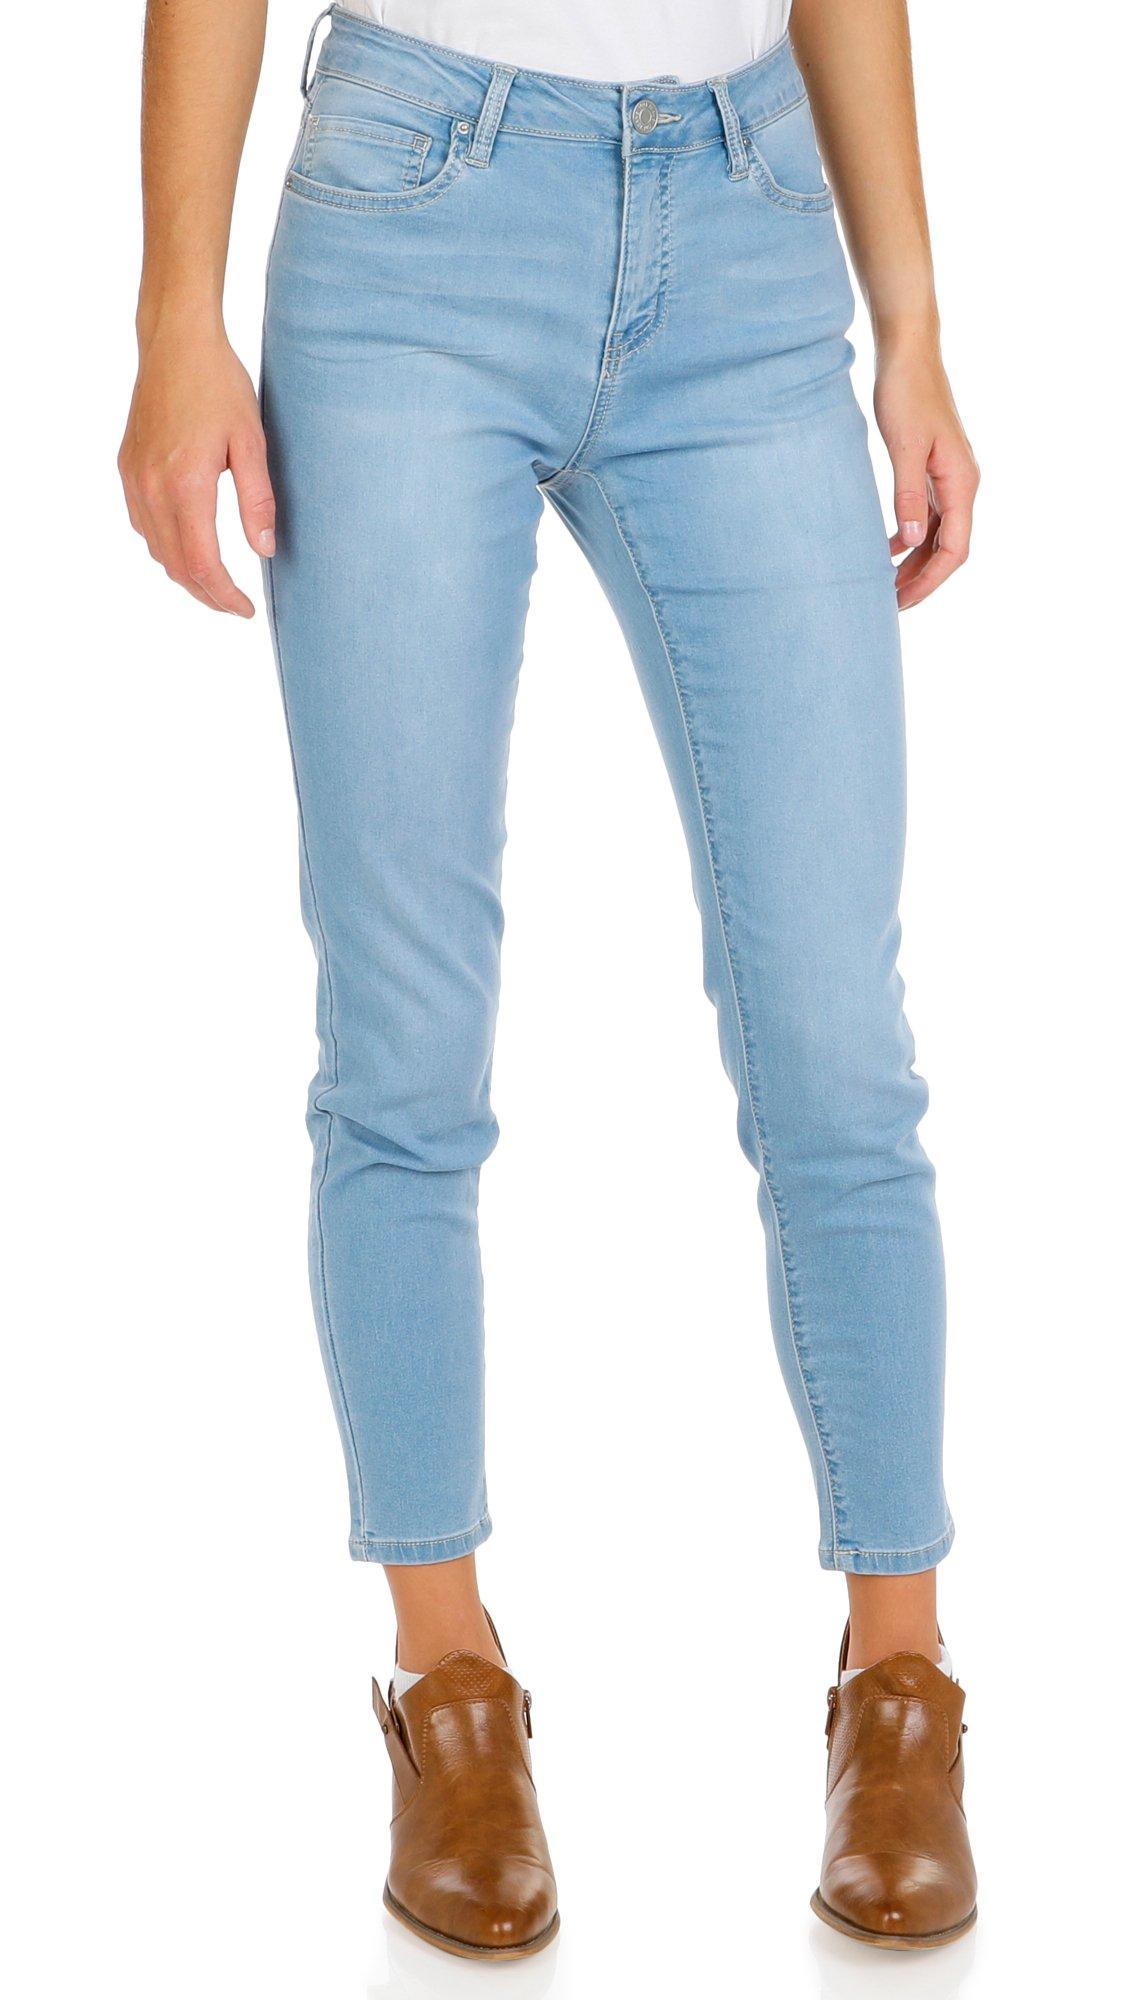 Juniors Hyper Basic Skinny Jeans